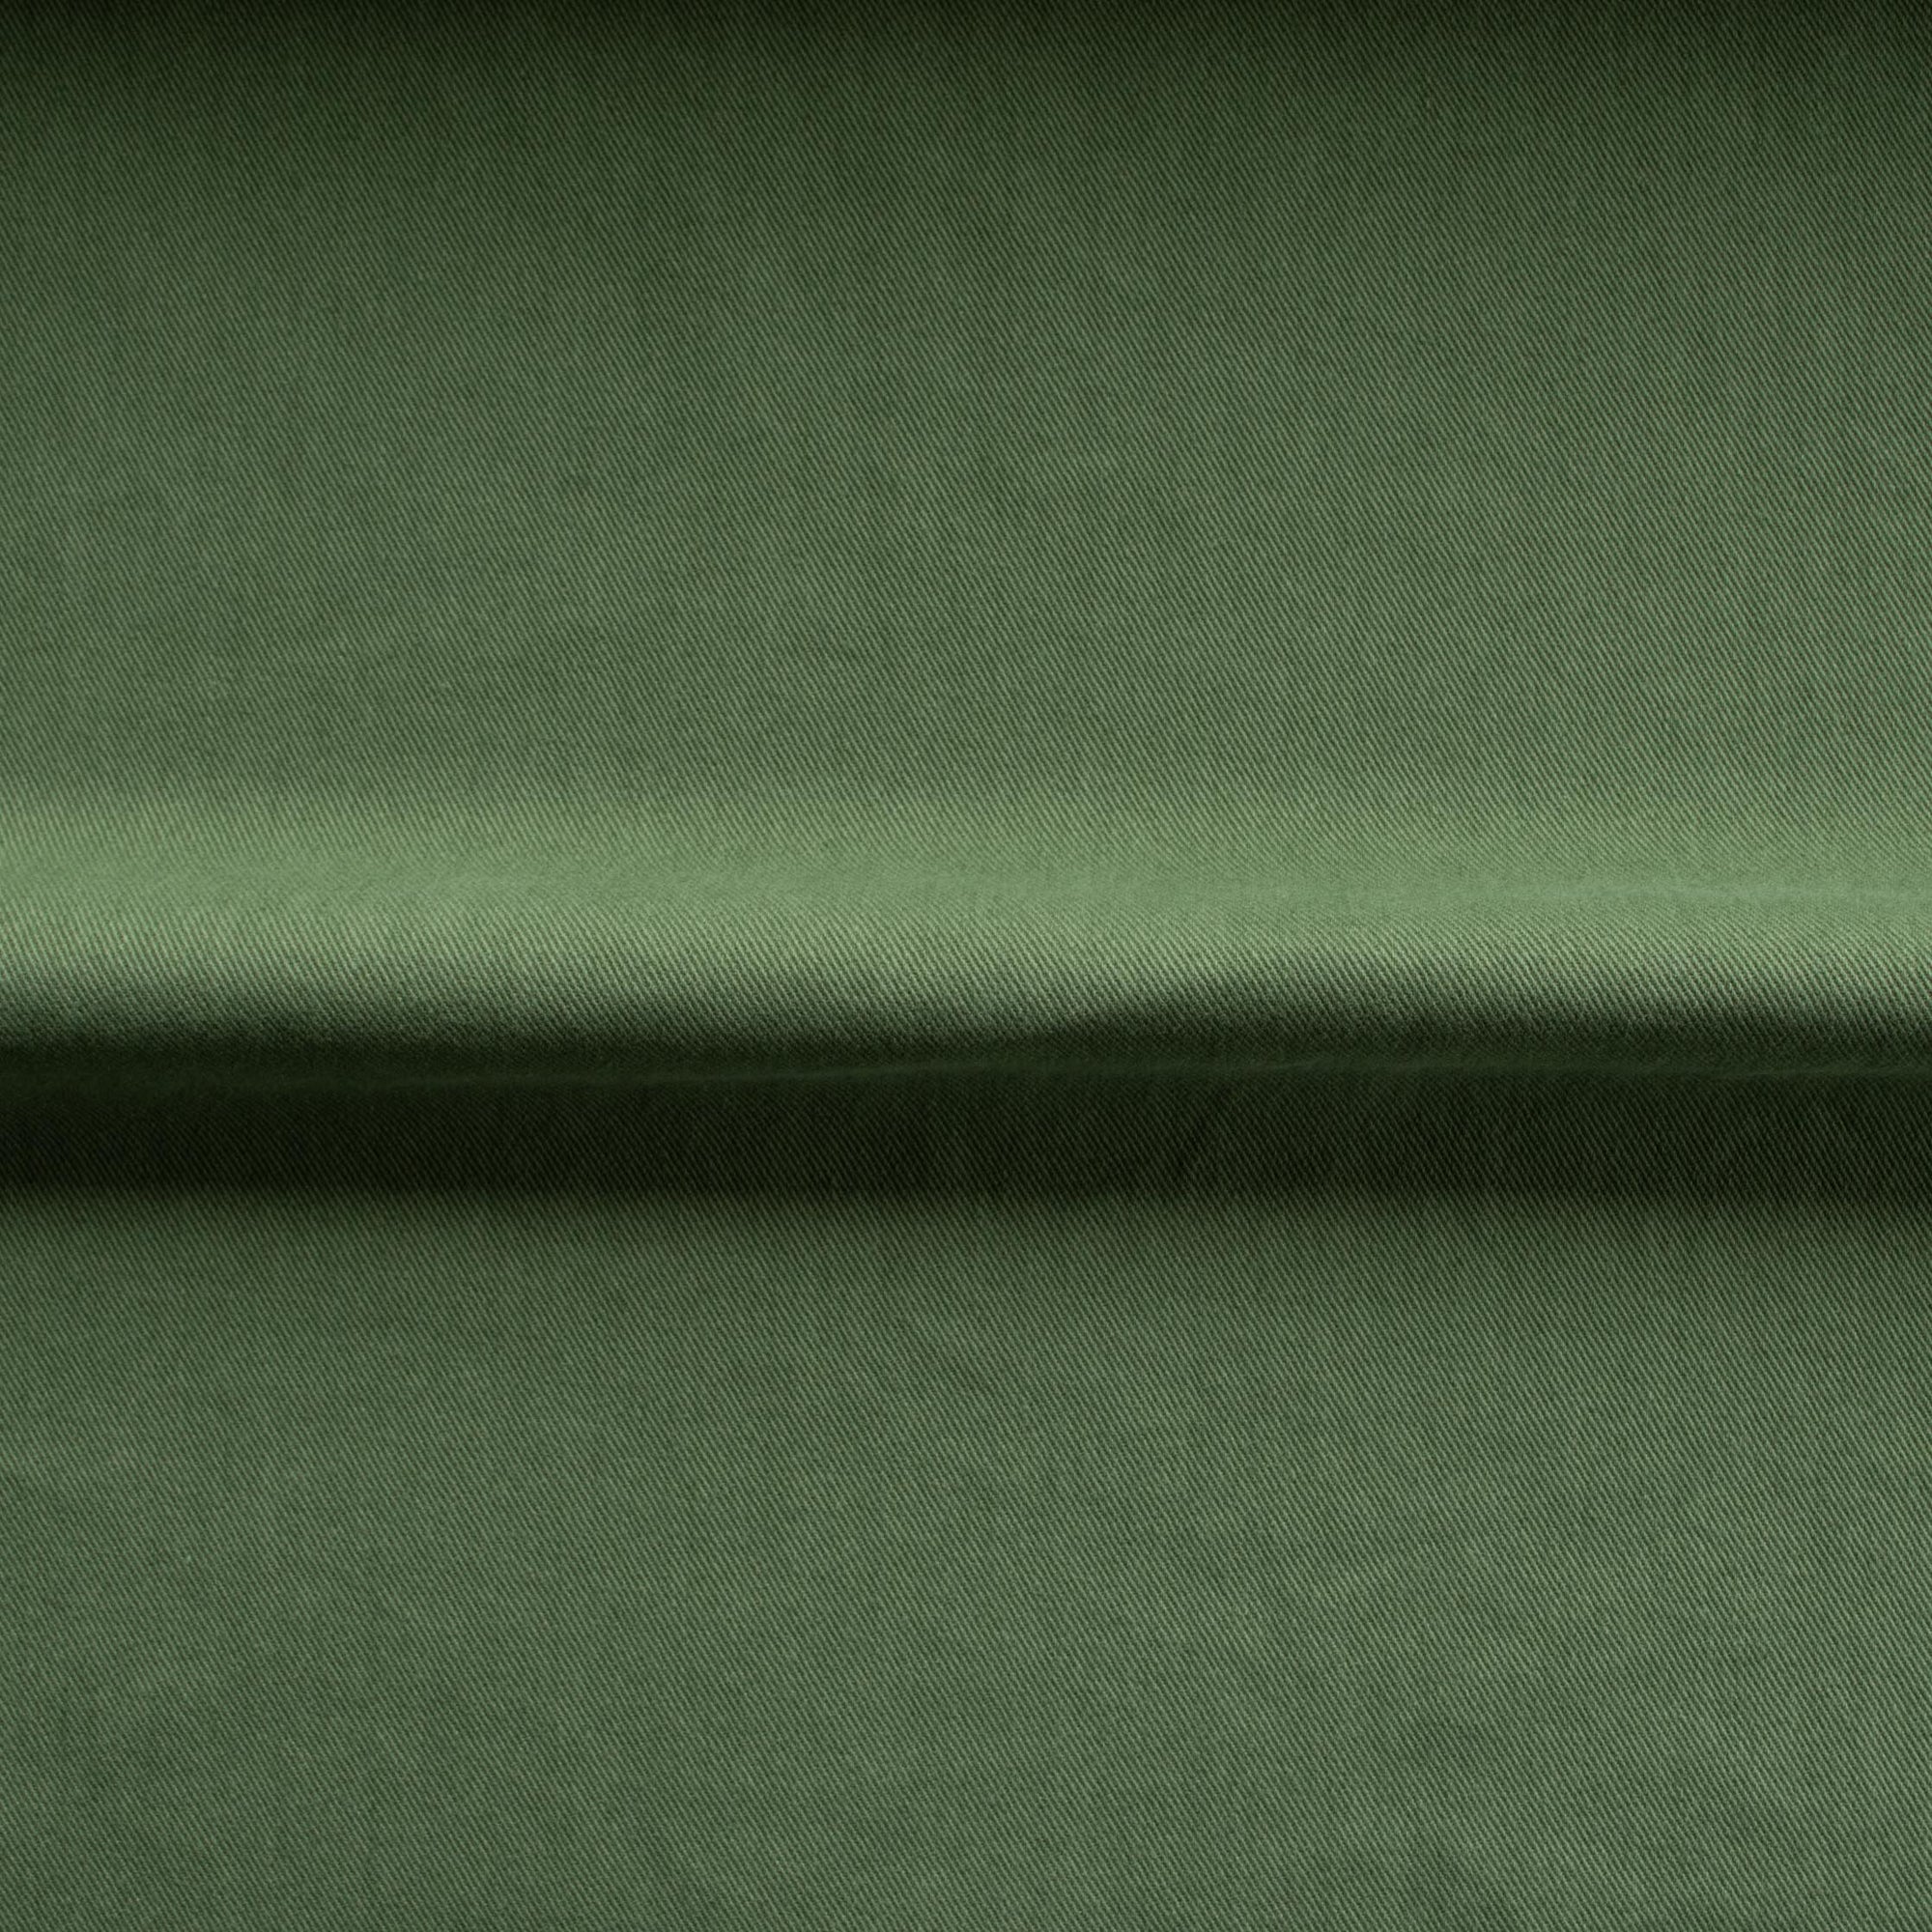 Heavy Cotton Drill - Green Tea - MaaiDesign